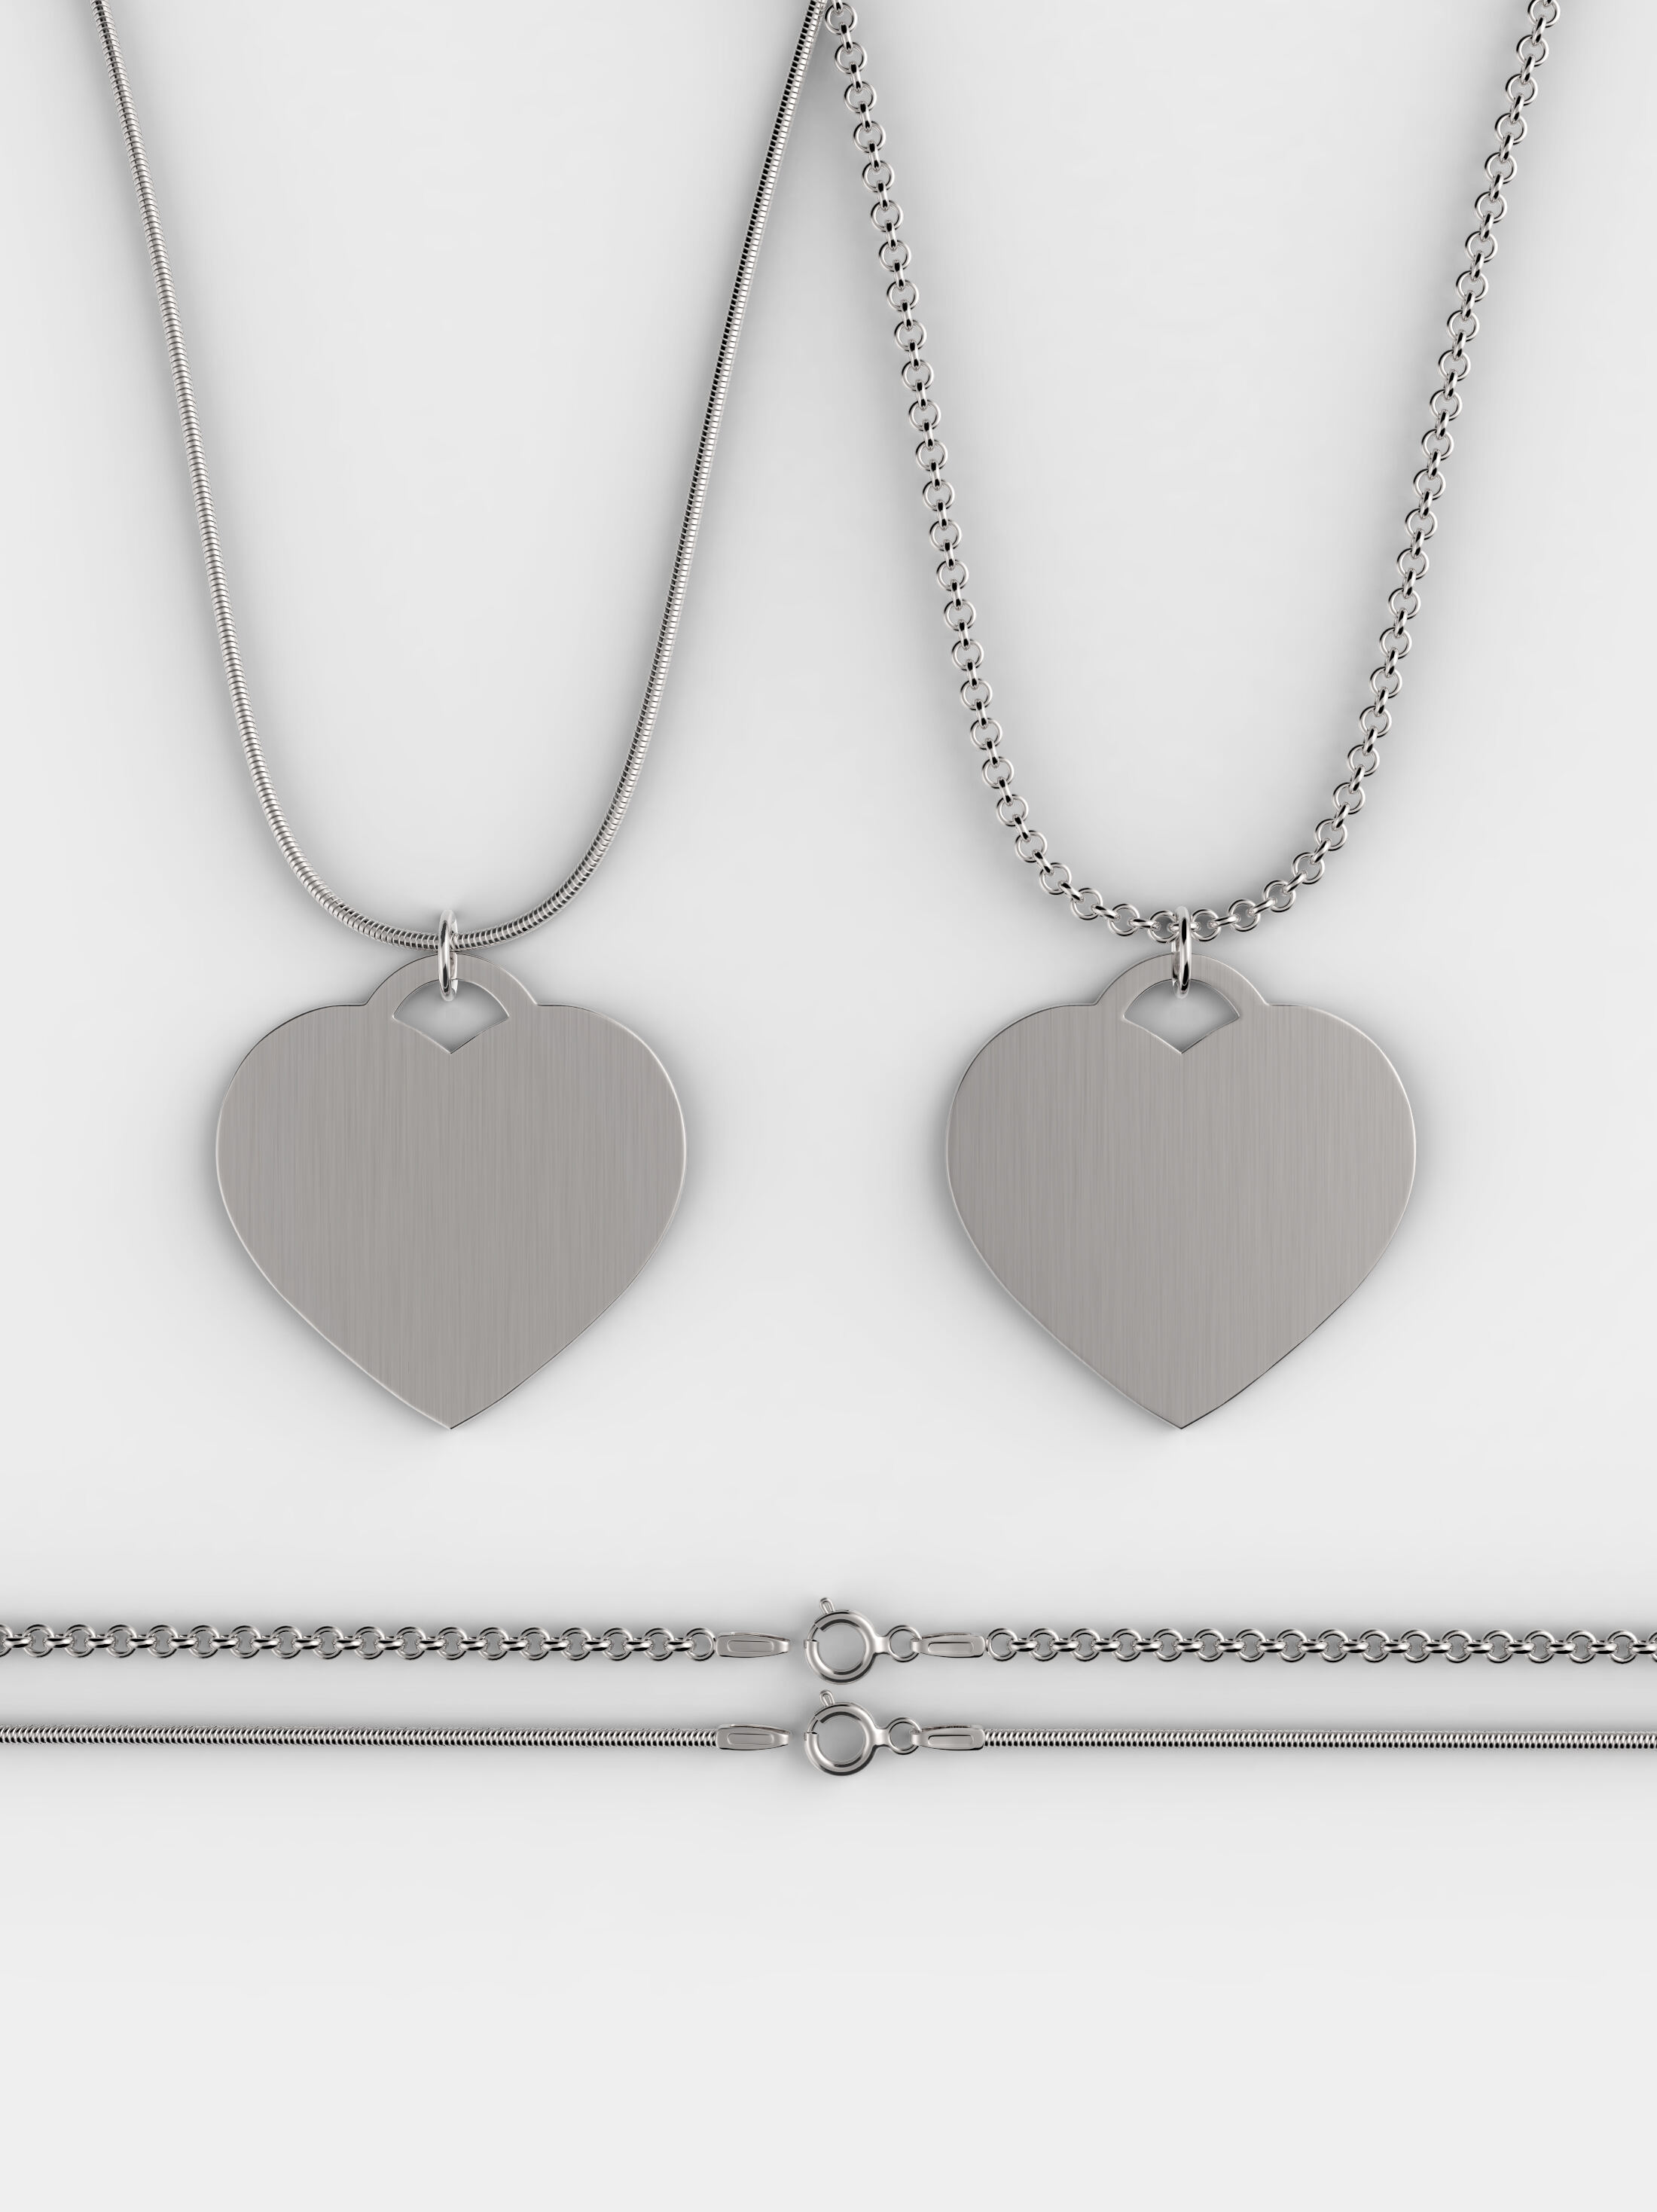 Fingerhut - Silvertone Personalized Heart Locket